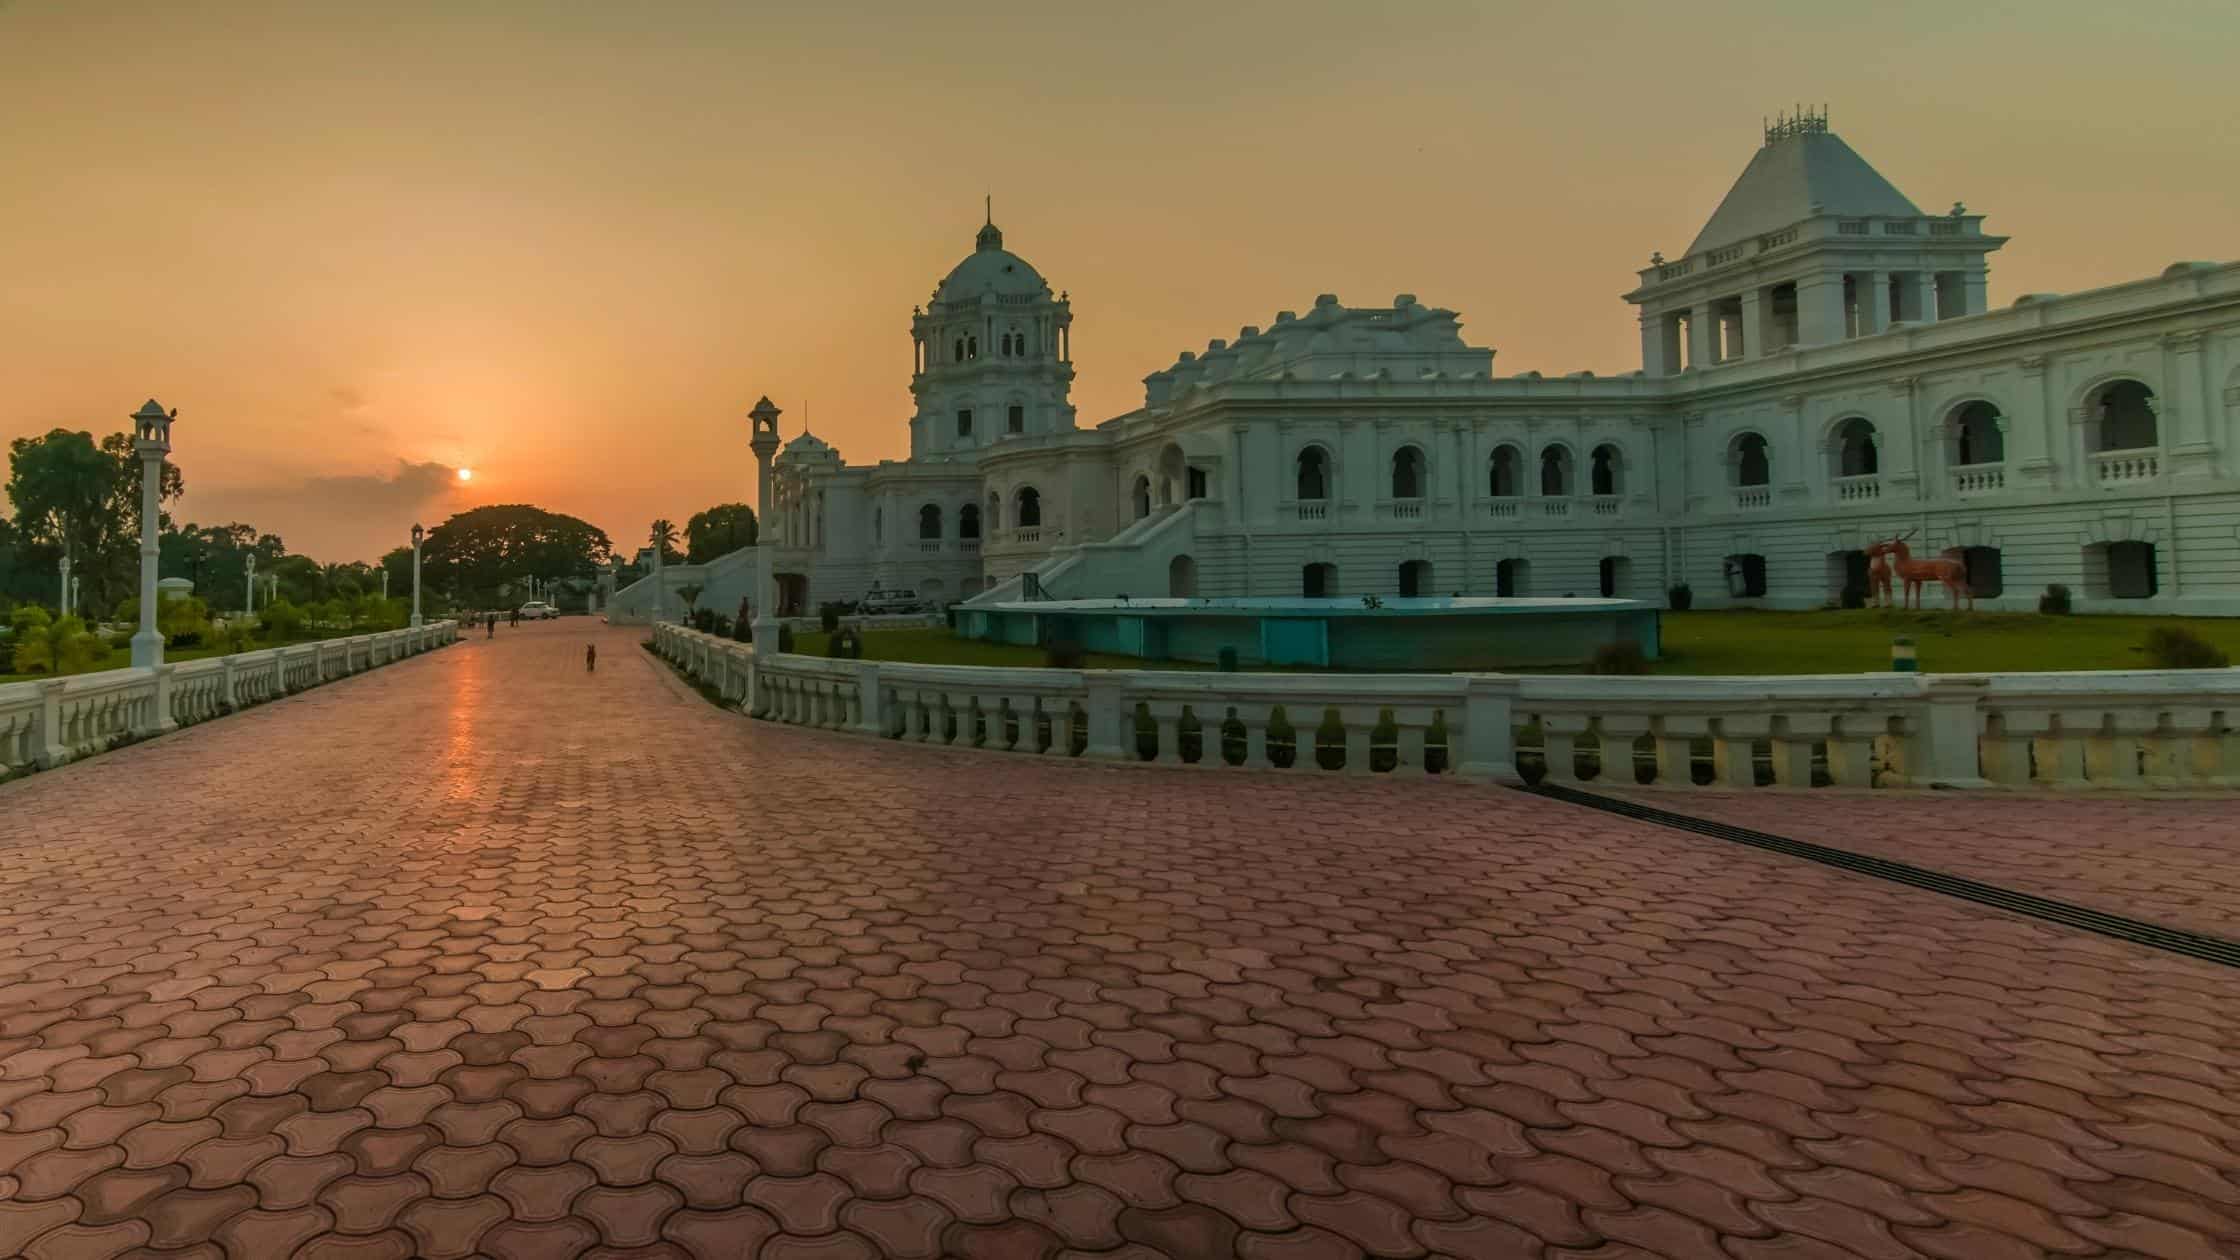 Tripura Government Museum